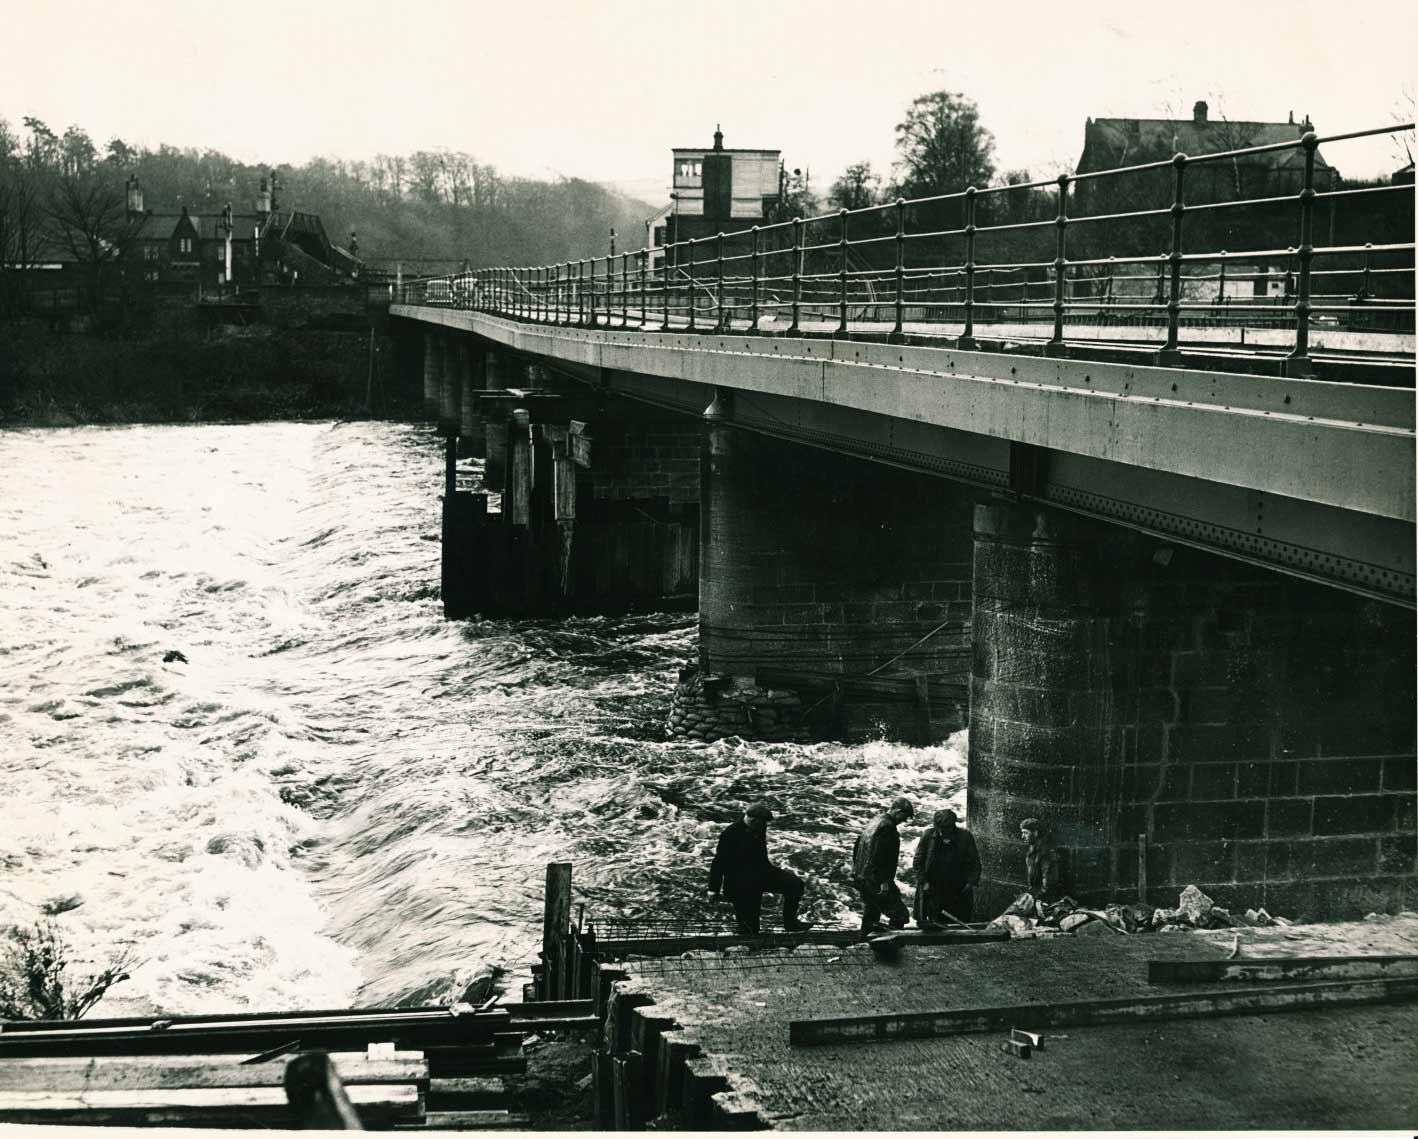 Repairing Wylam Bridge in January 1958